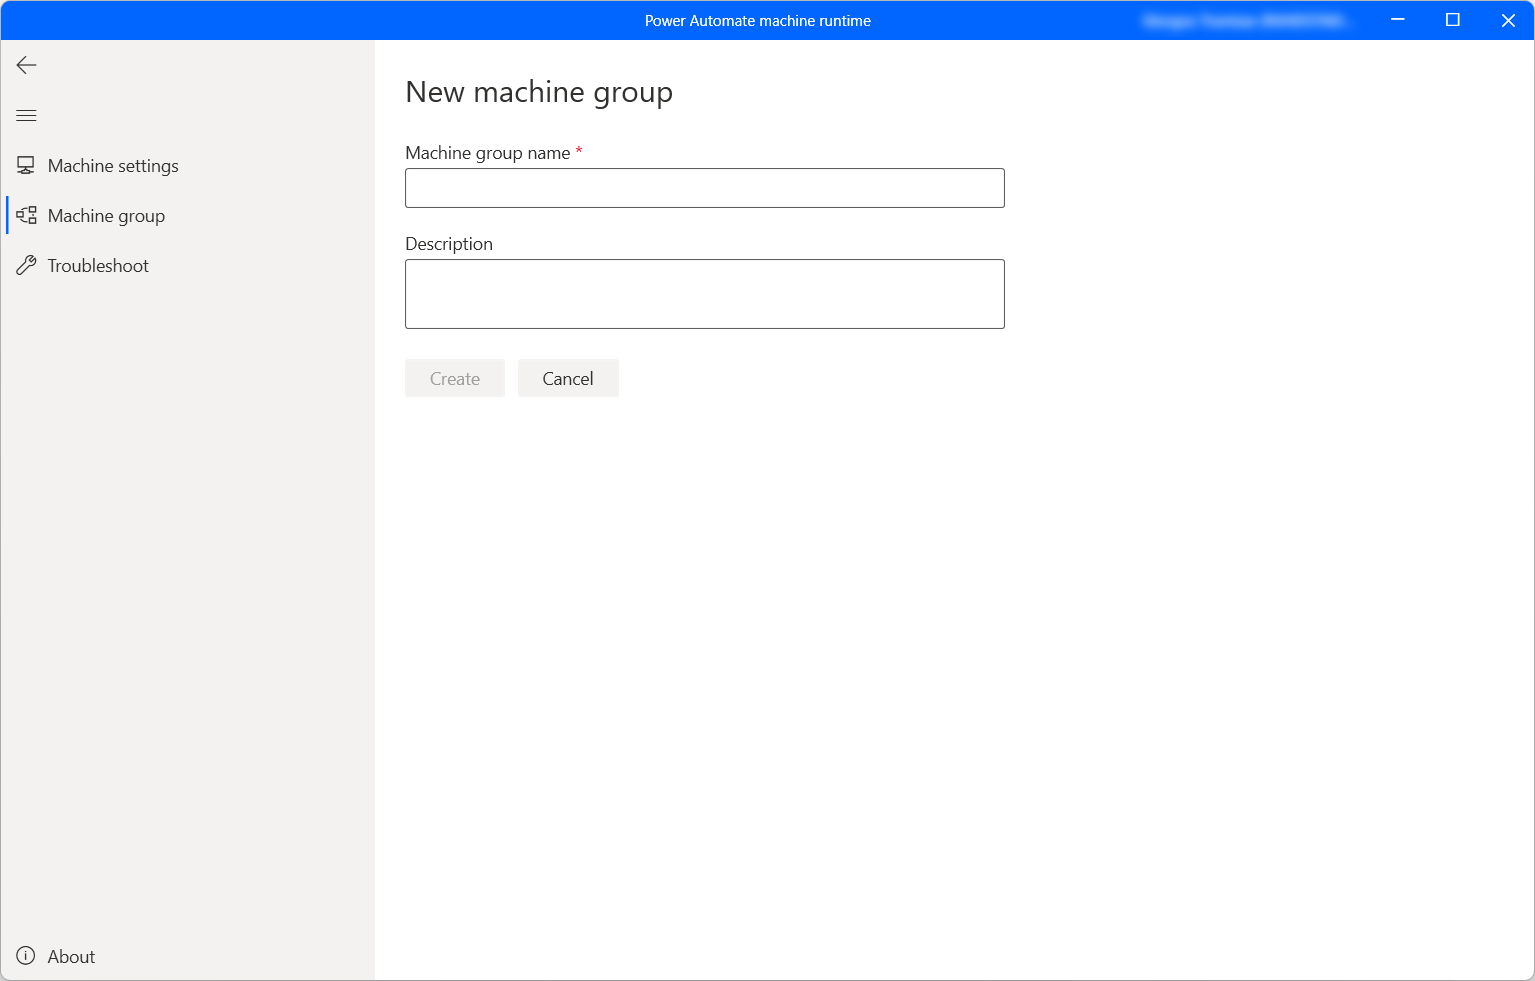 Cuplikan layar dialog untuk membuat grup mesin baru.